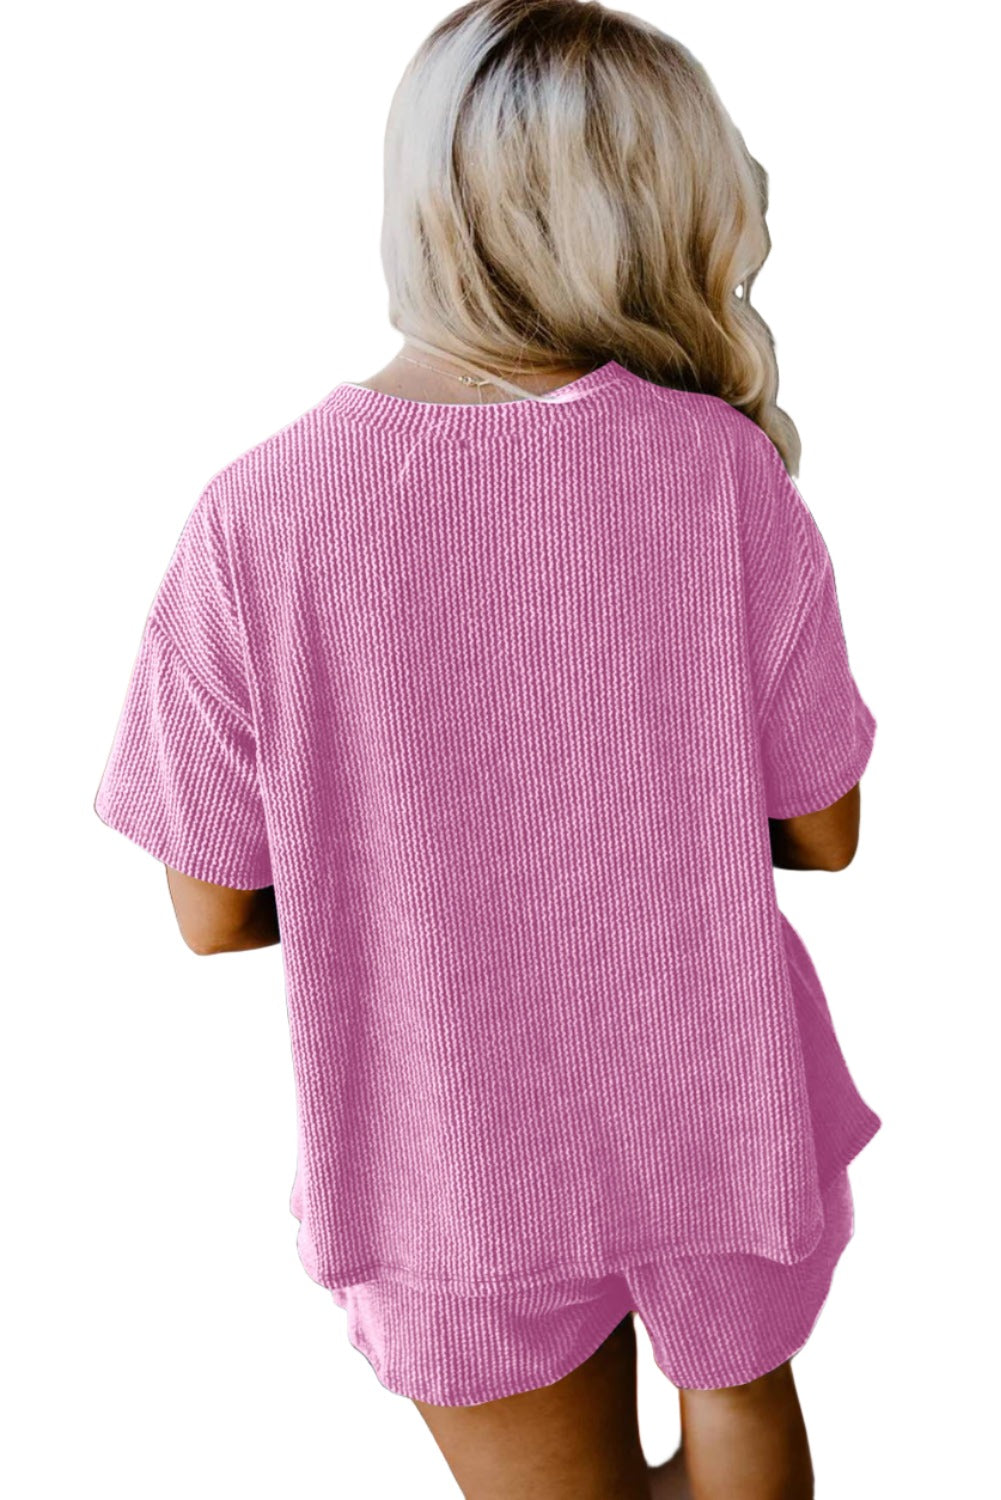 Phalaenopsis Ribbed Knit T Shirt and Shorts Plus Size Pajama Set